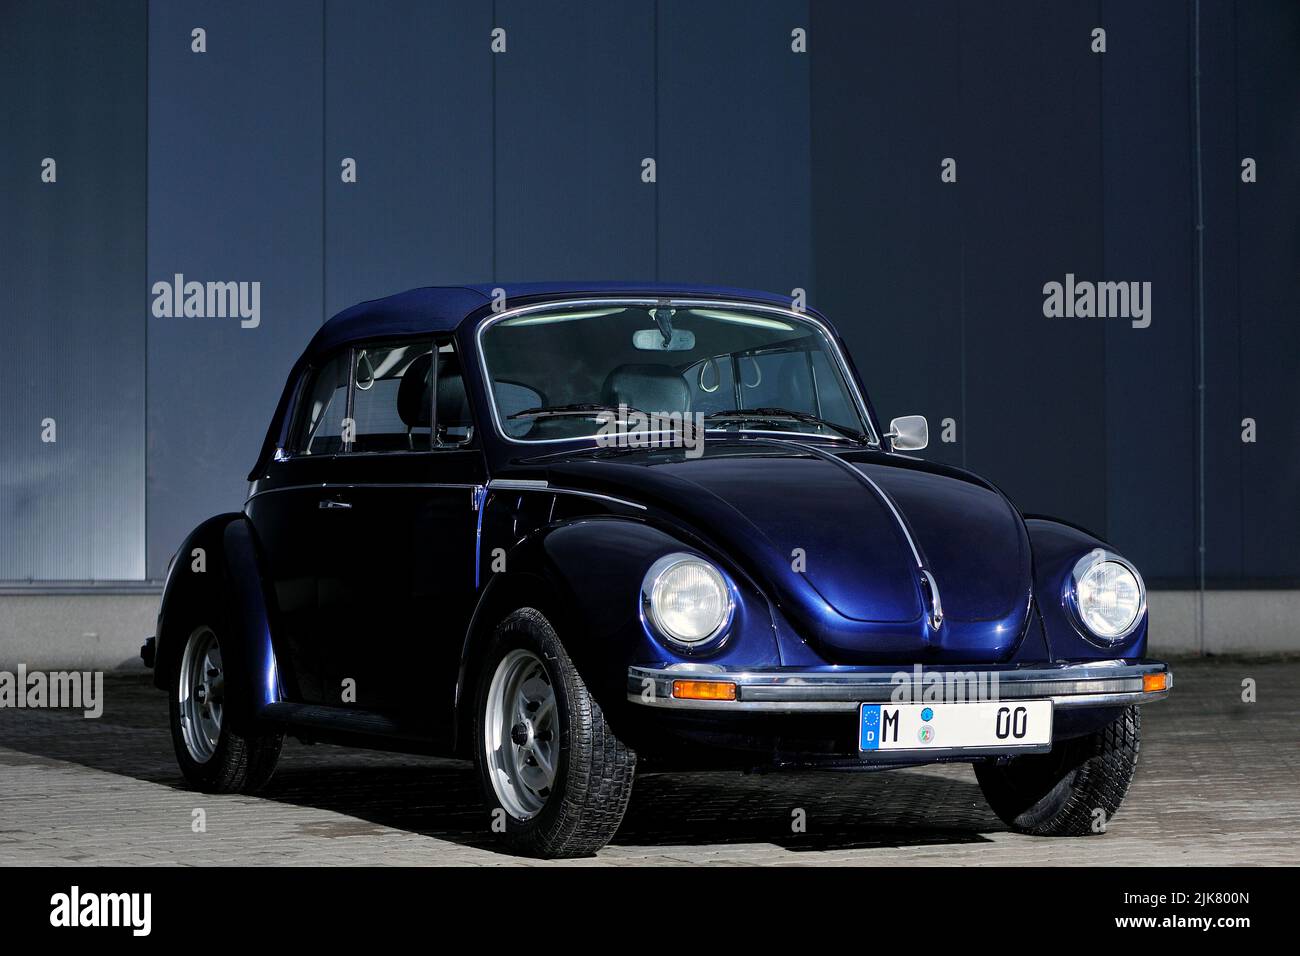 Volkswagen Escarabajo, coche clásico, VW Escarabajo, retro, brillante, velocidad, dirección, calle, estilo, transporte, transporte, vehículo, vibes retro, Foto de stock